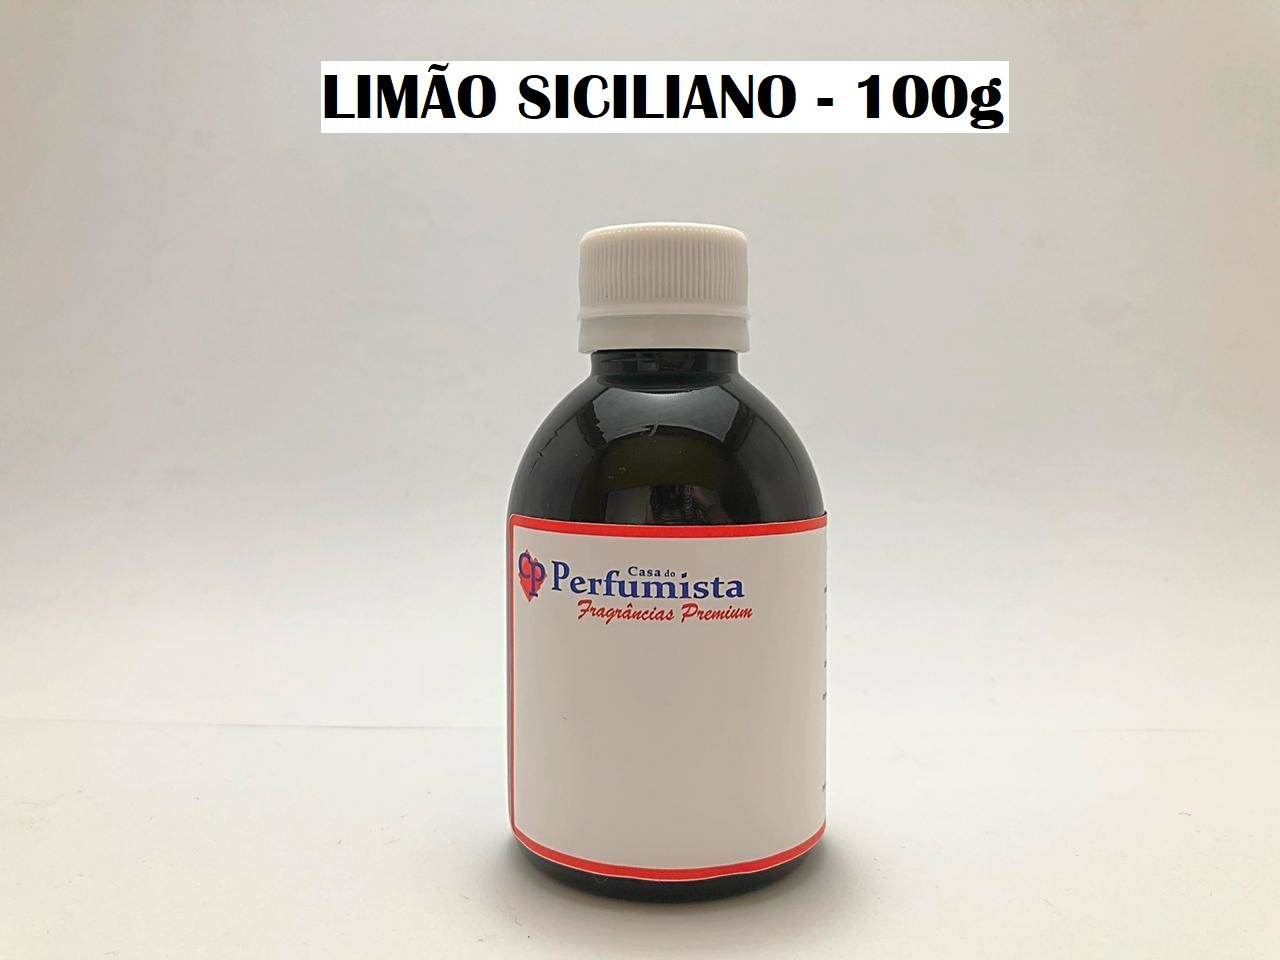 LIMÃO SICILIANO - 100g